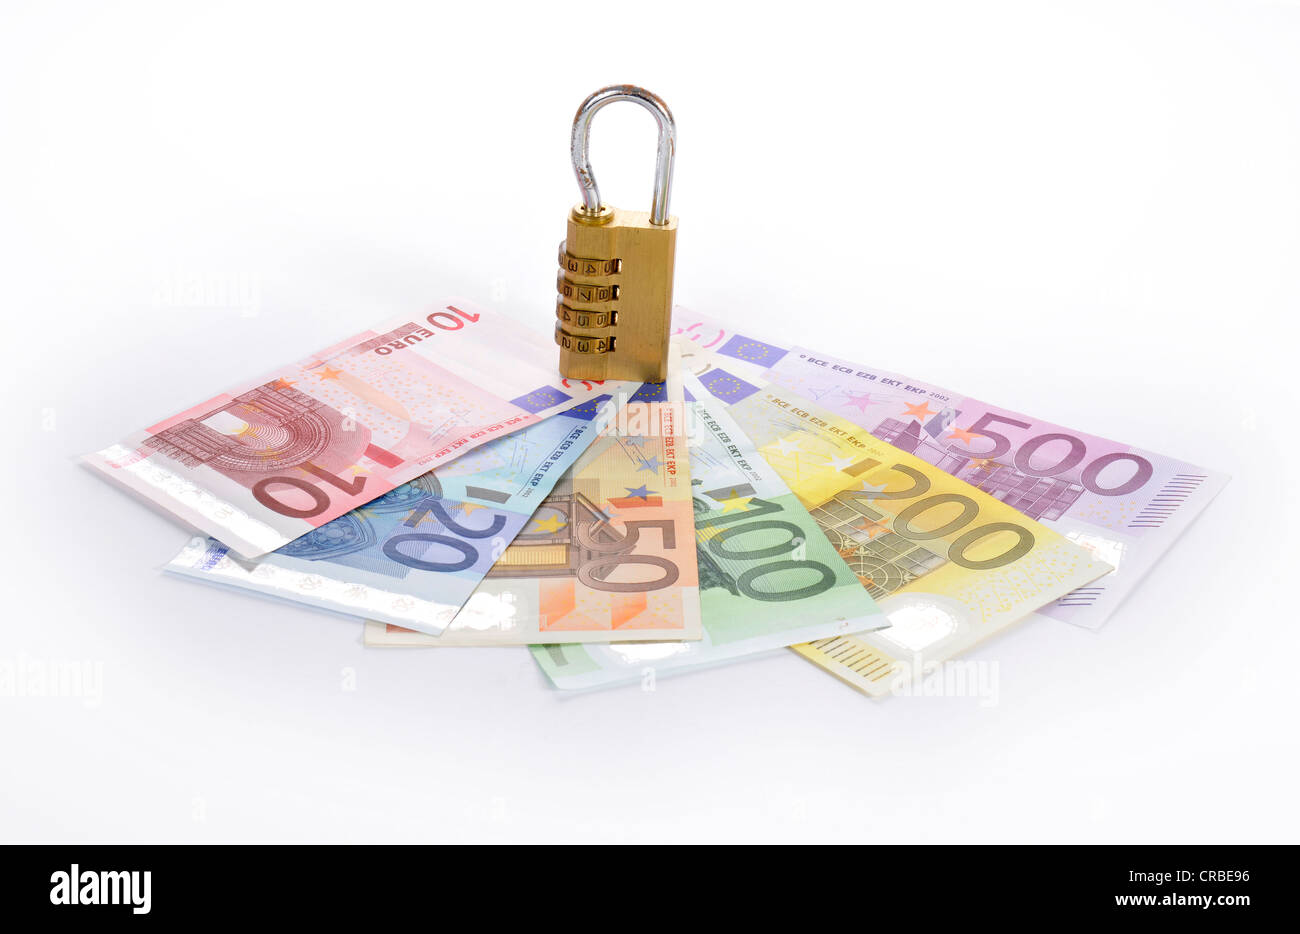 Zahlenschloss auf Euro-Banknoten, symbolisches Bild der monetäre Sicherheit Stockfoto